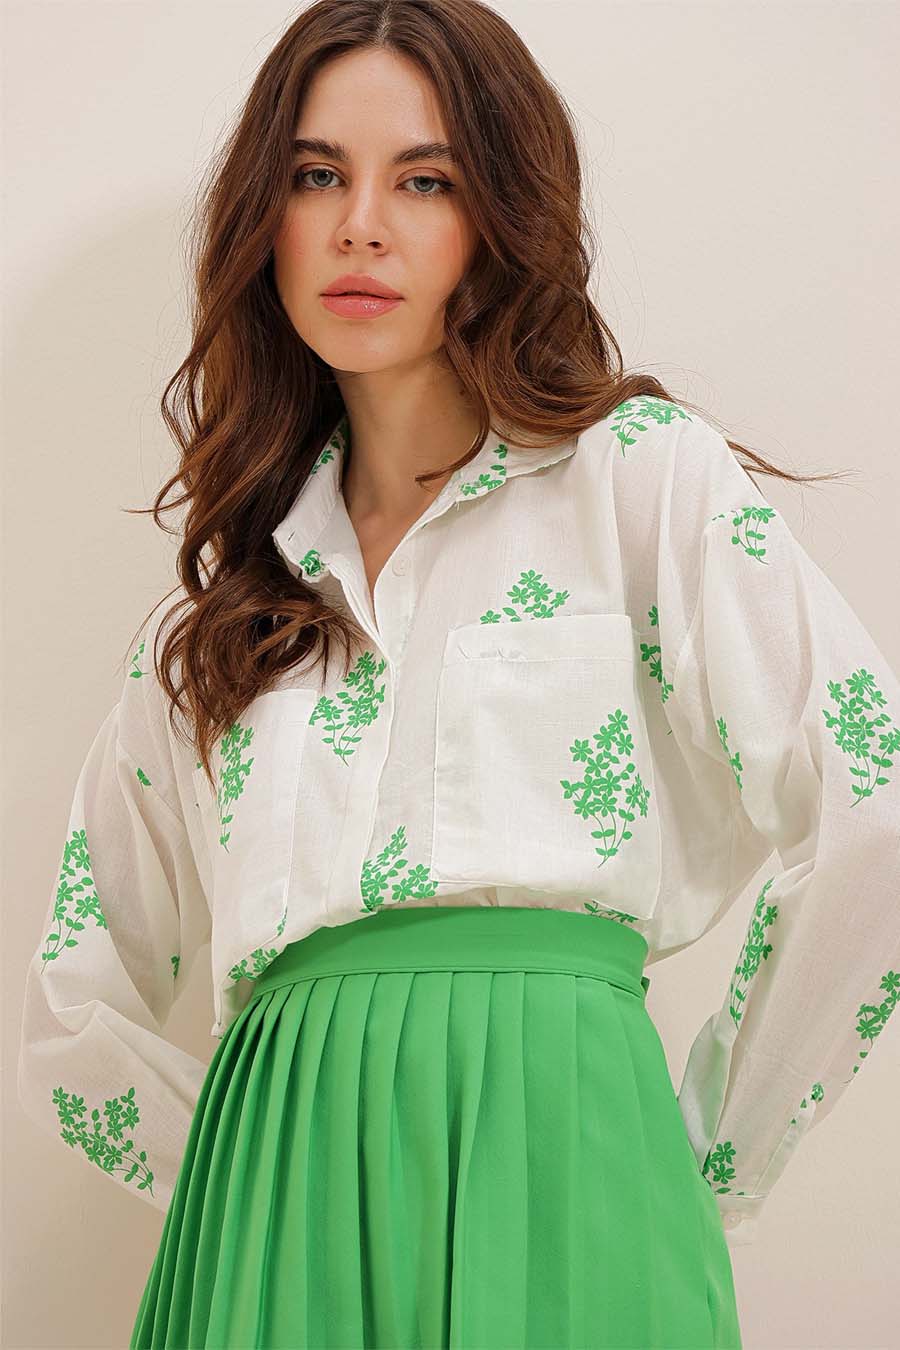 Γυναικείο πουκάμισο Darana, Λευκό/Πράσινο 2